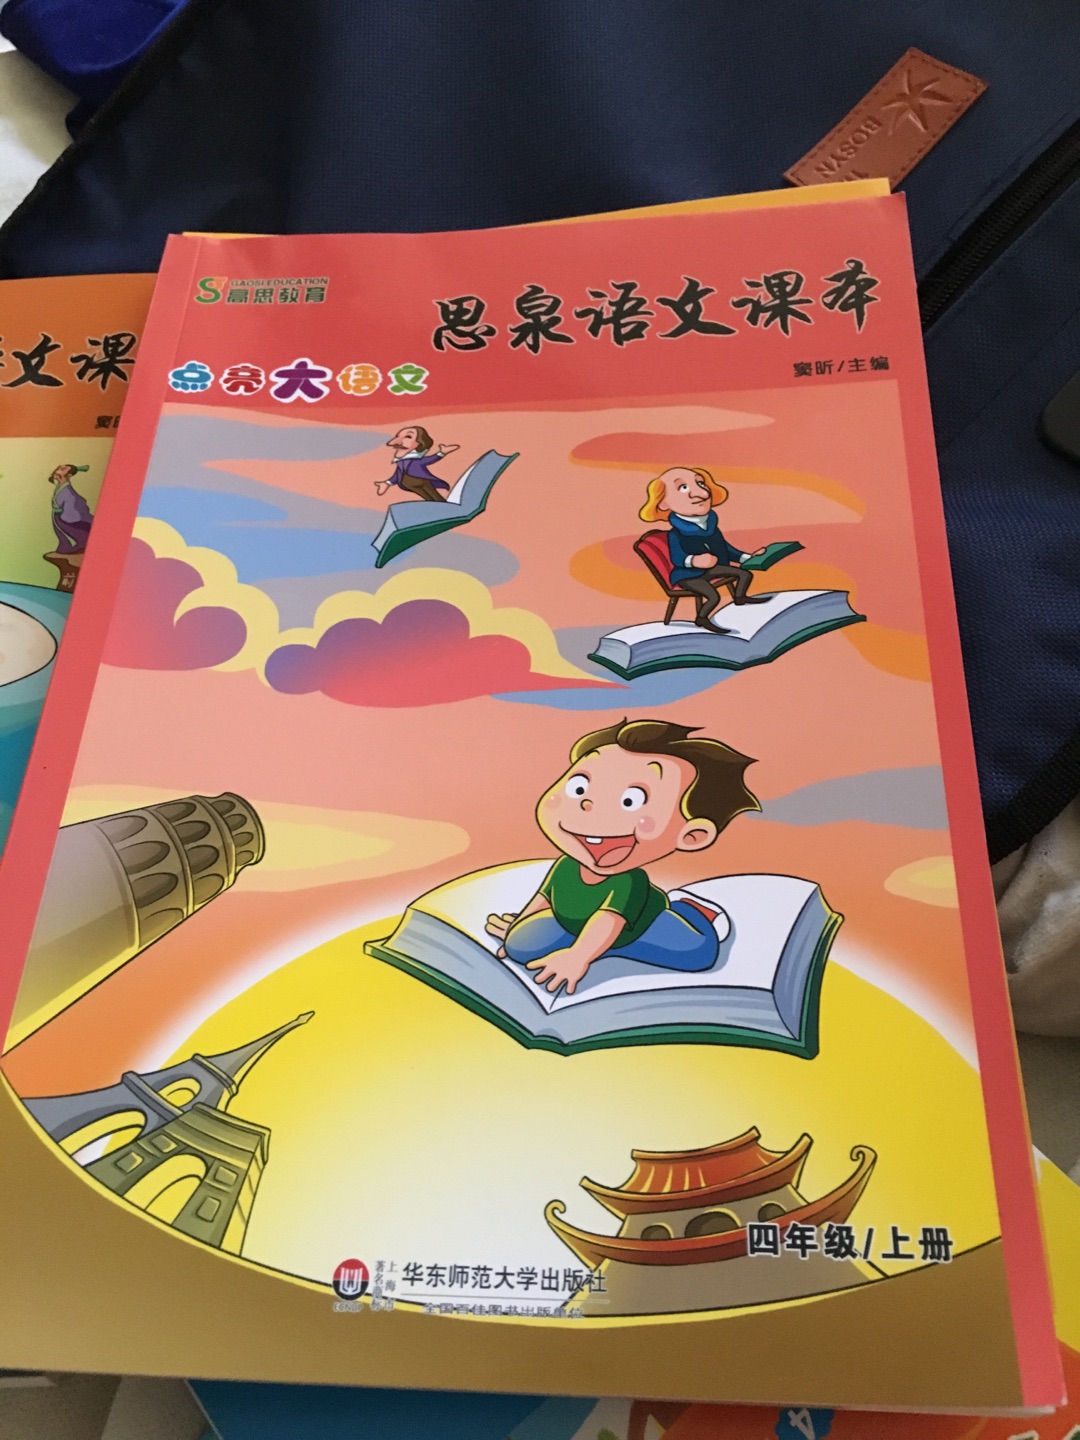 思泉课本，更具中国特色，注重传统文化的传承，而不仅仅局限于识字。